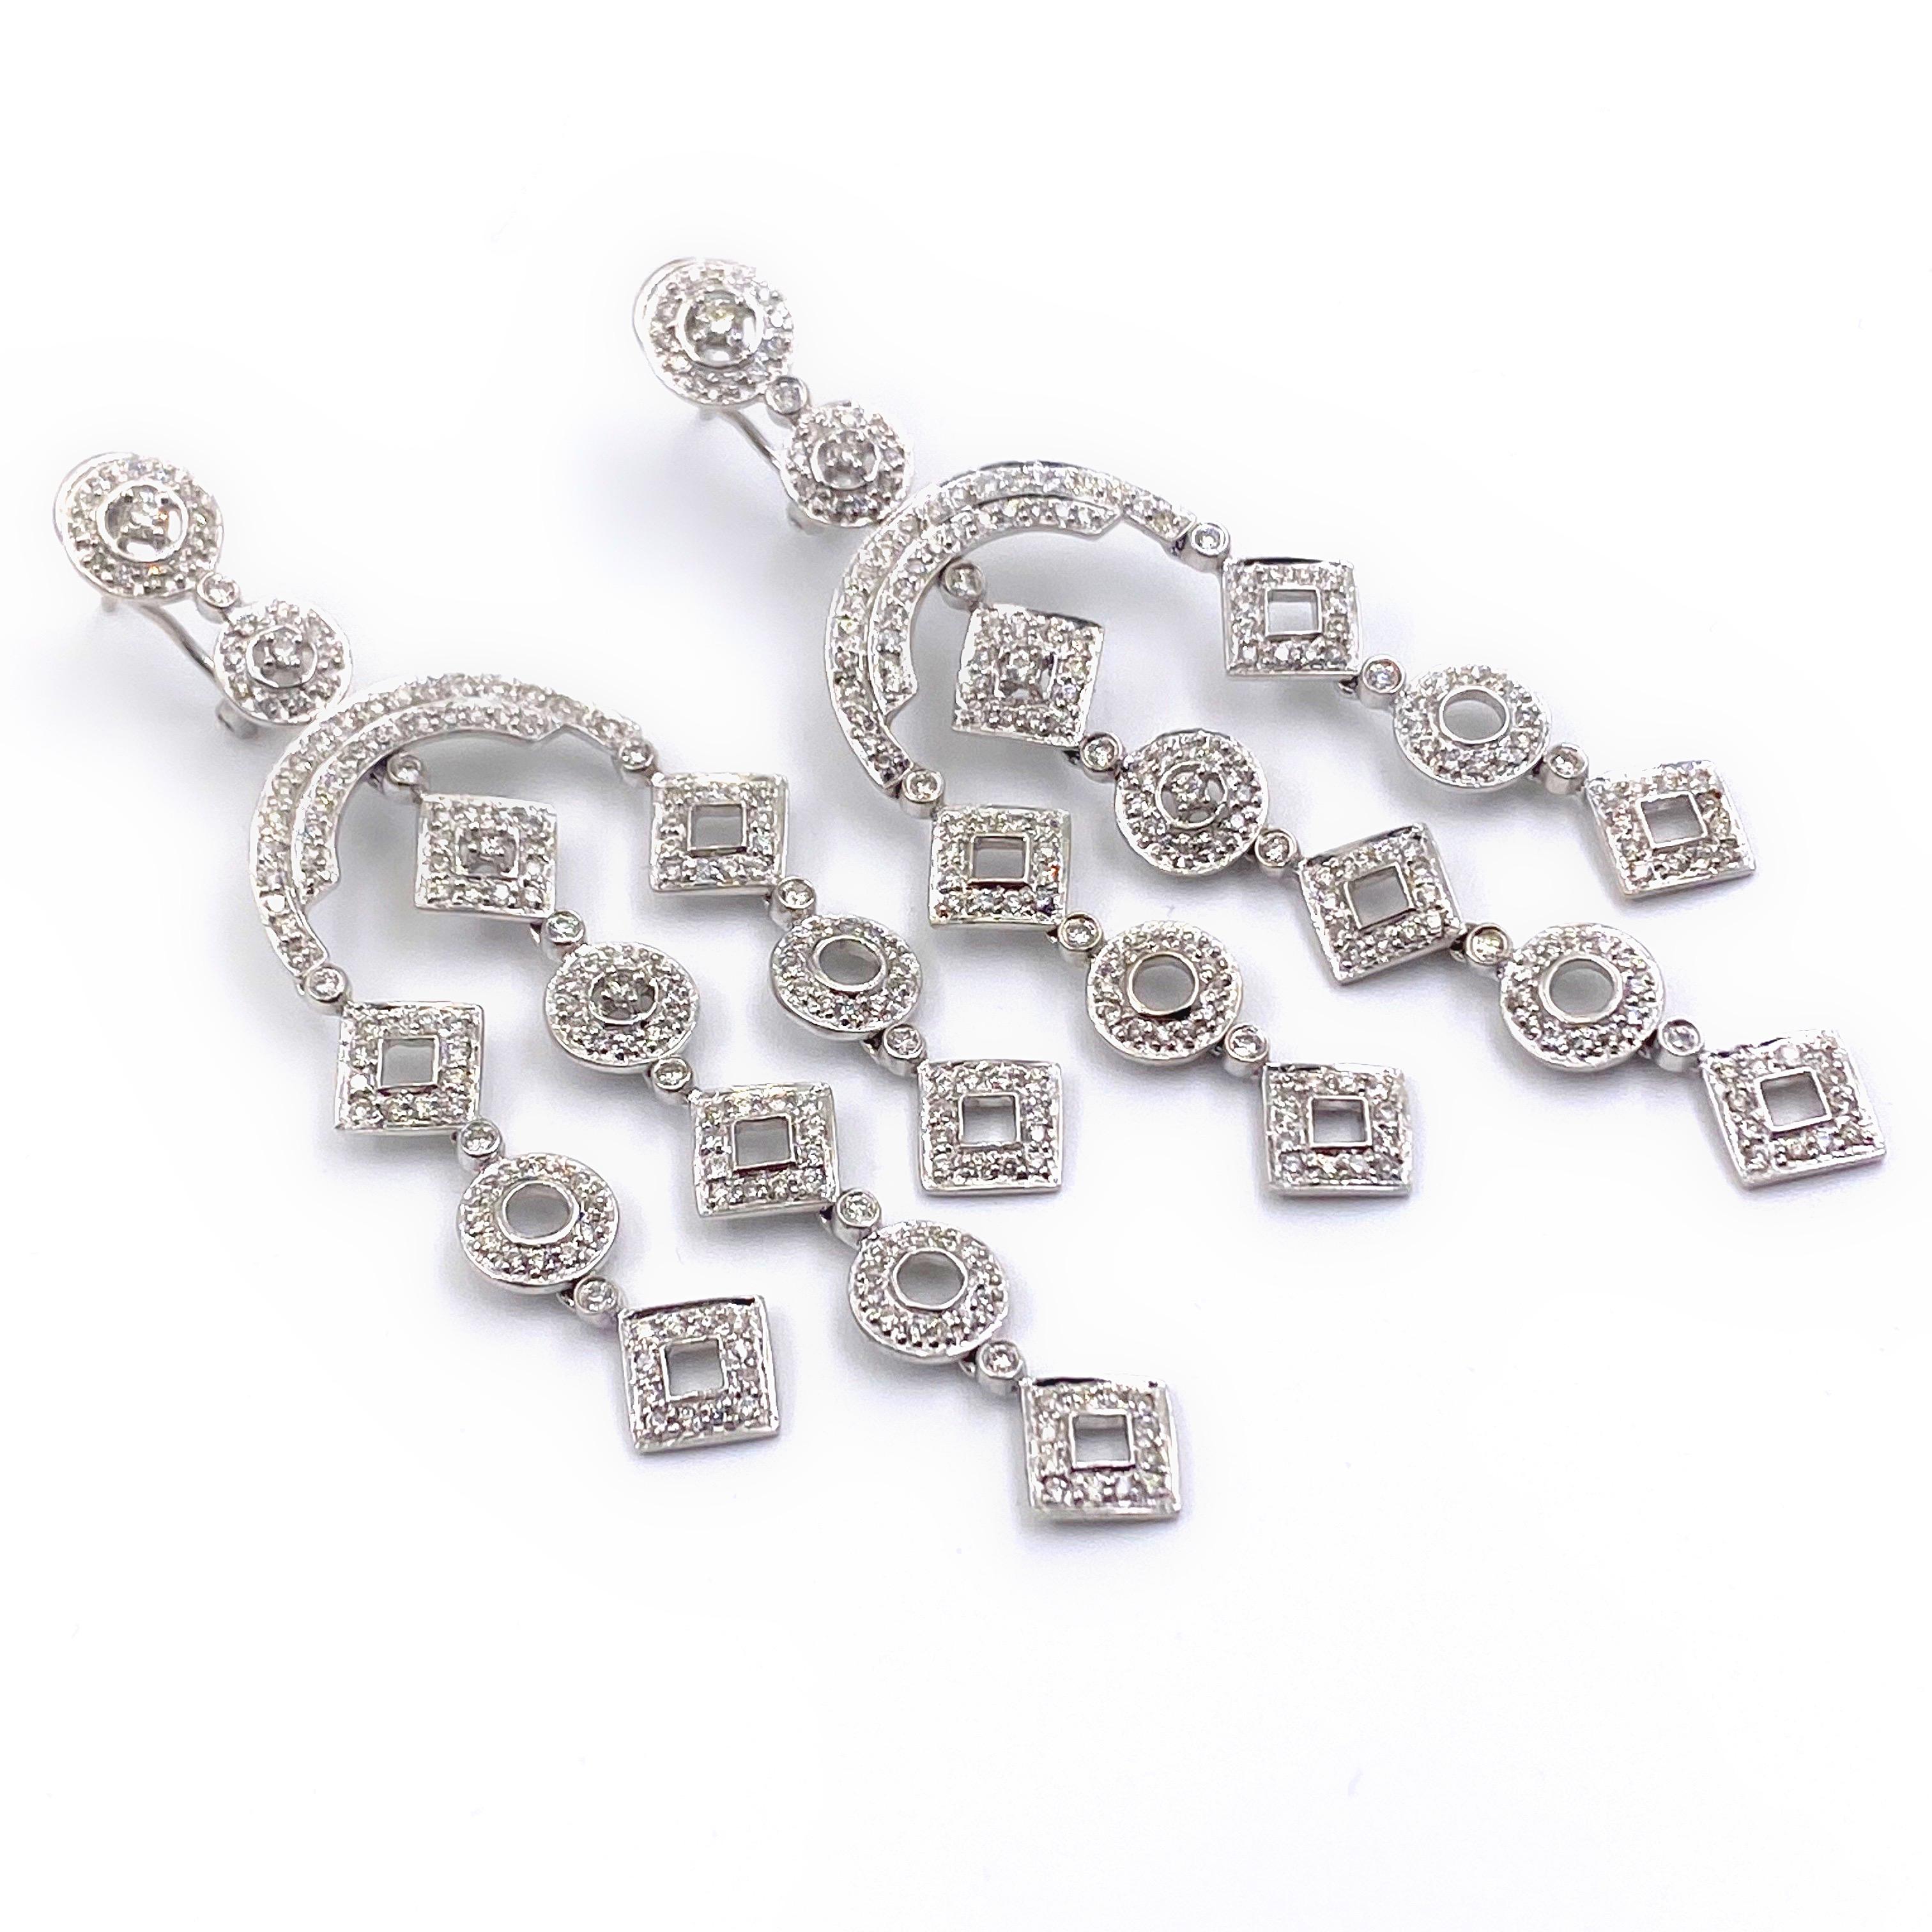 Diamond Geometric Chandelier Earrings 2 Carat Total Weight in 14 Karat Gold For Sale 3